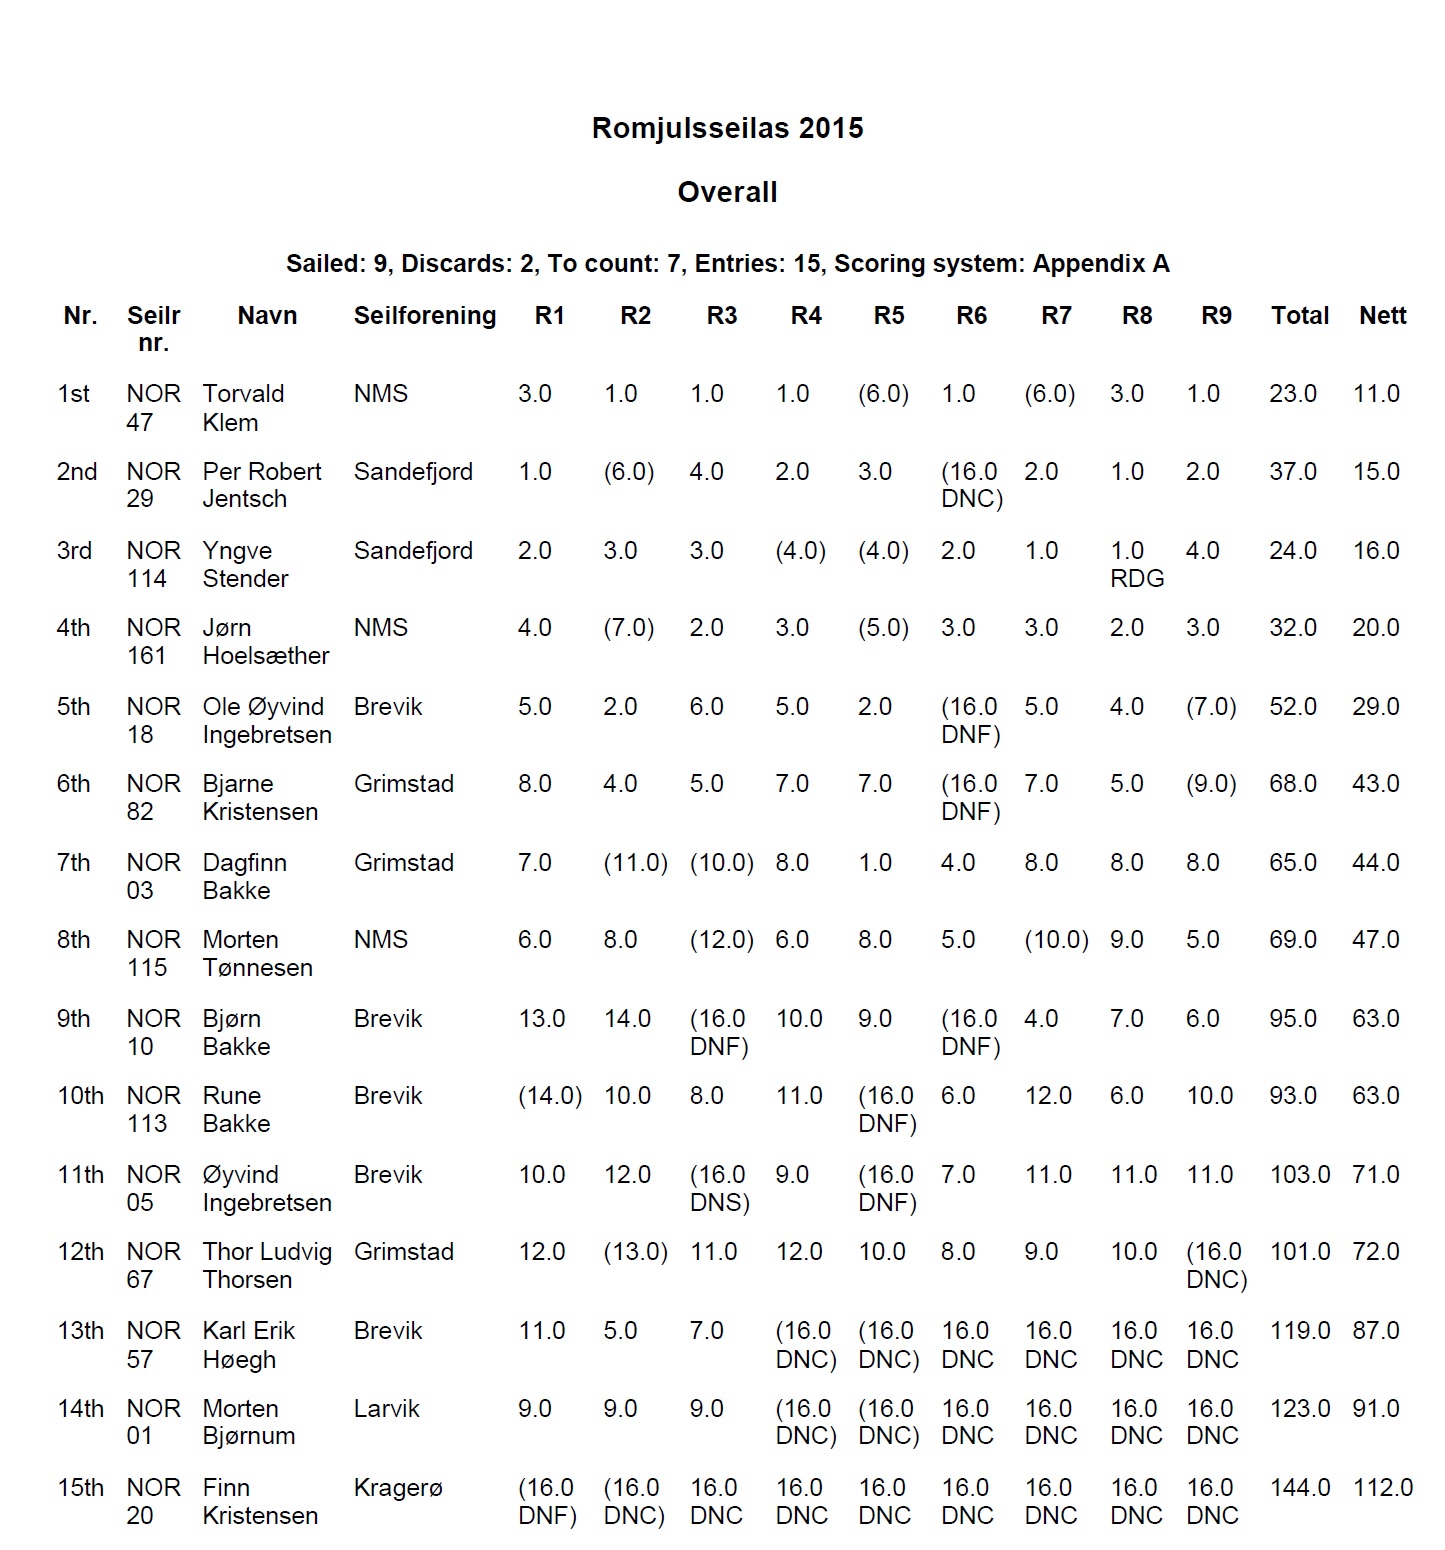 Romjulseilas 2015 result